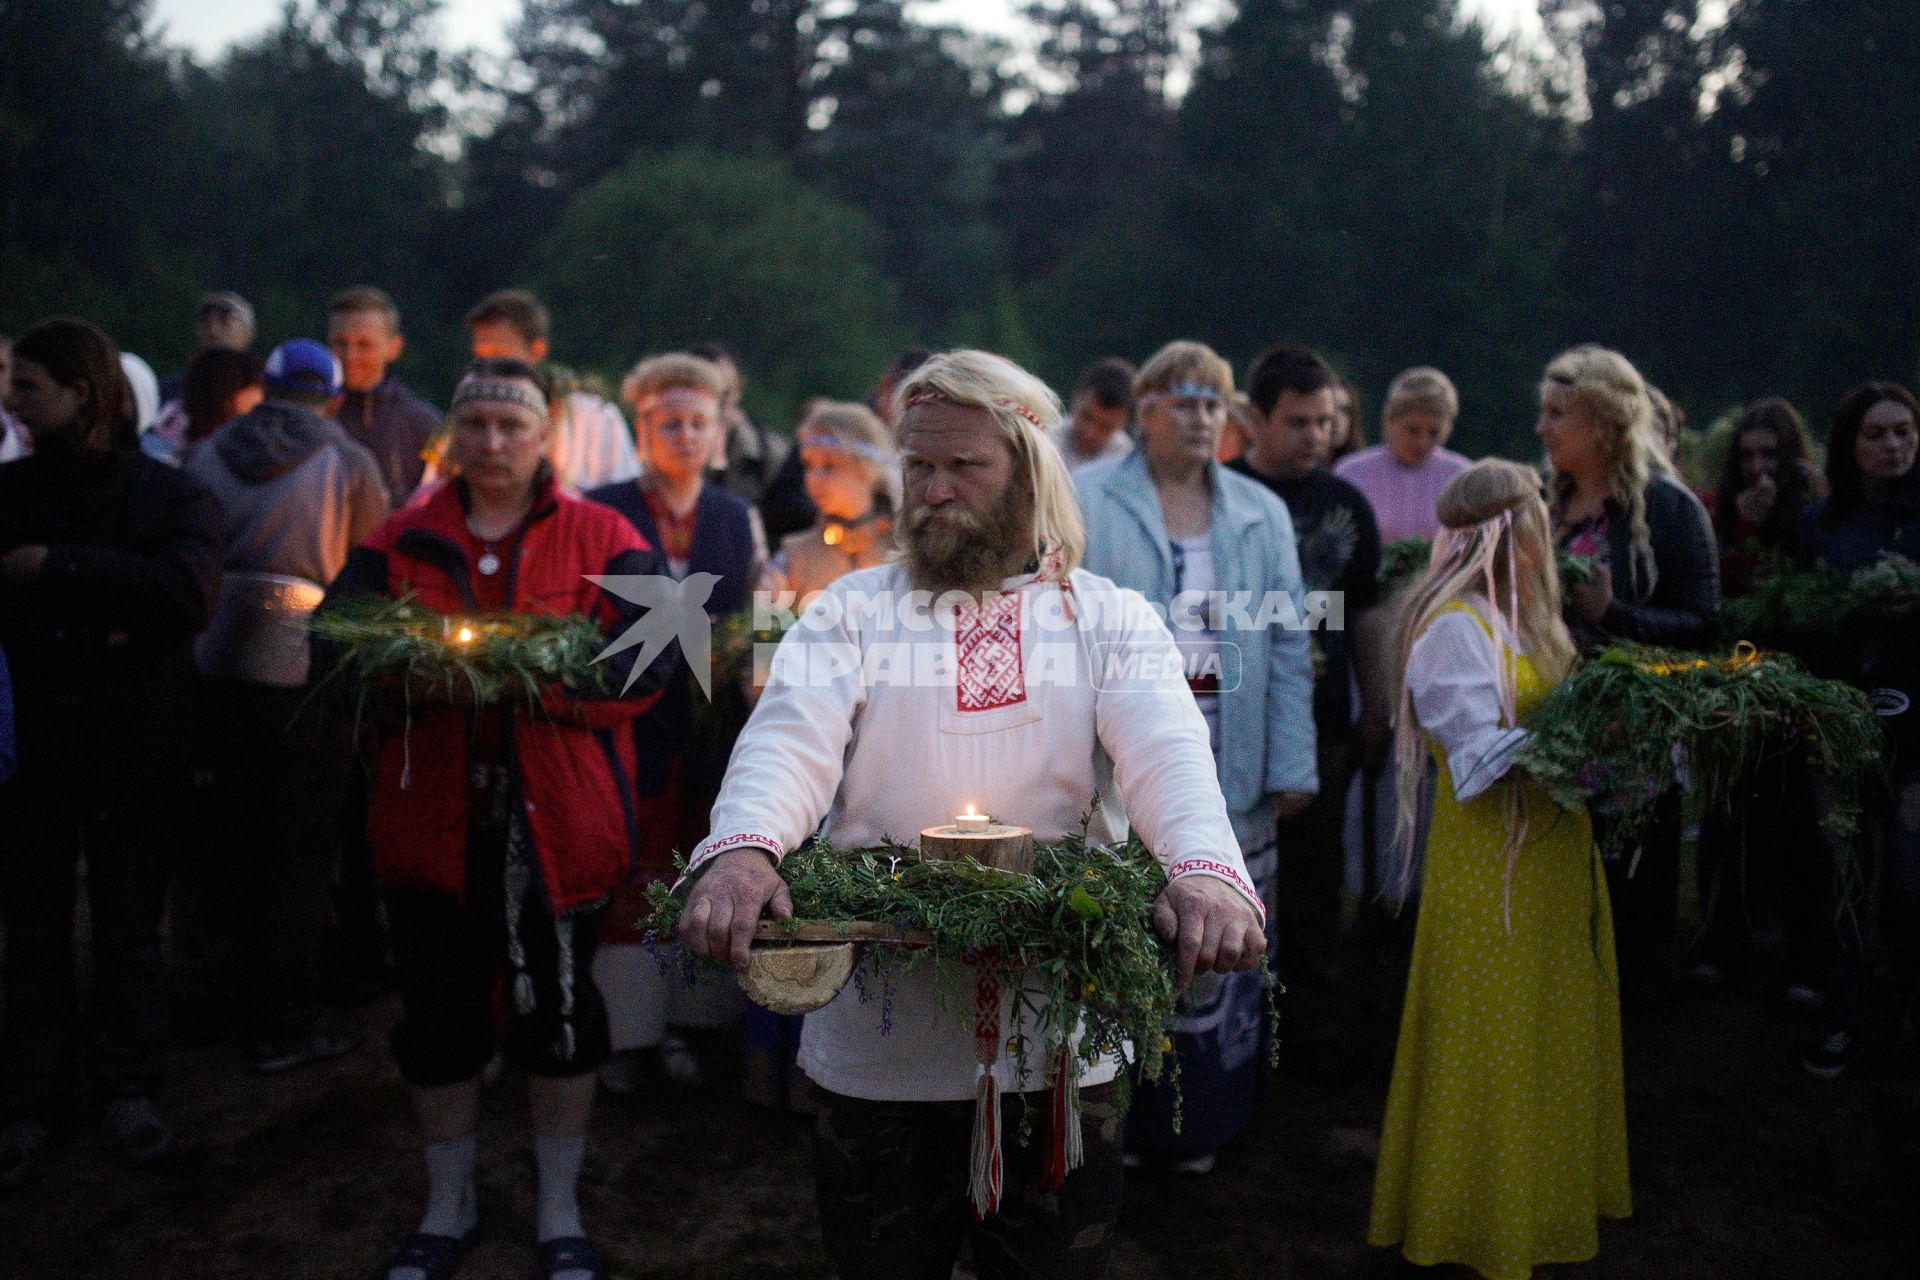 Участники празднования дня Ивана Купала стоят с венками в руках, перед их спуском на воду